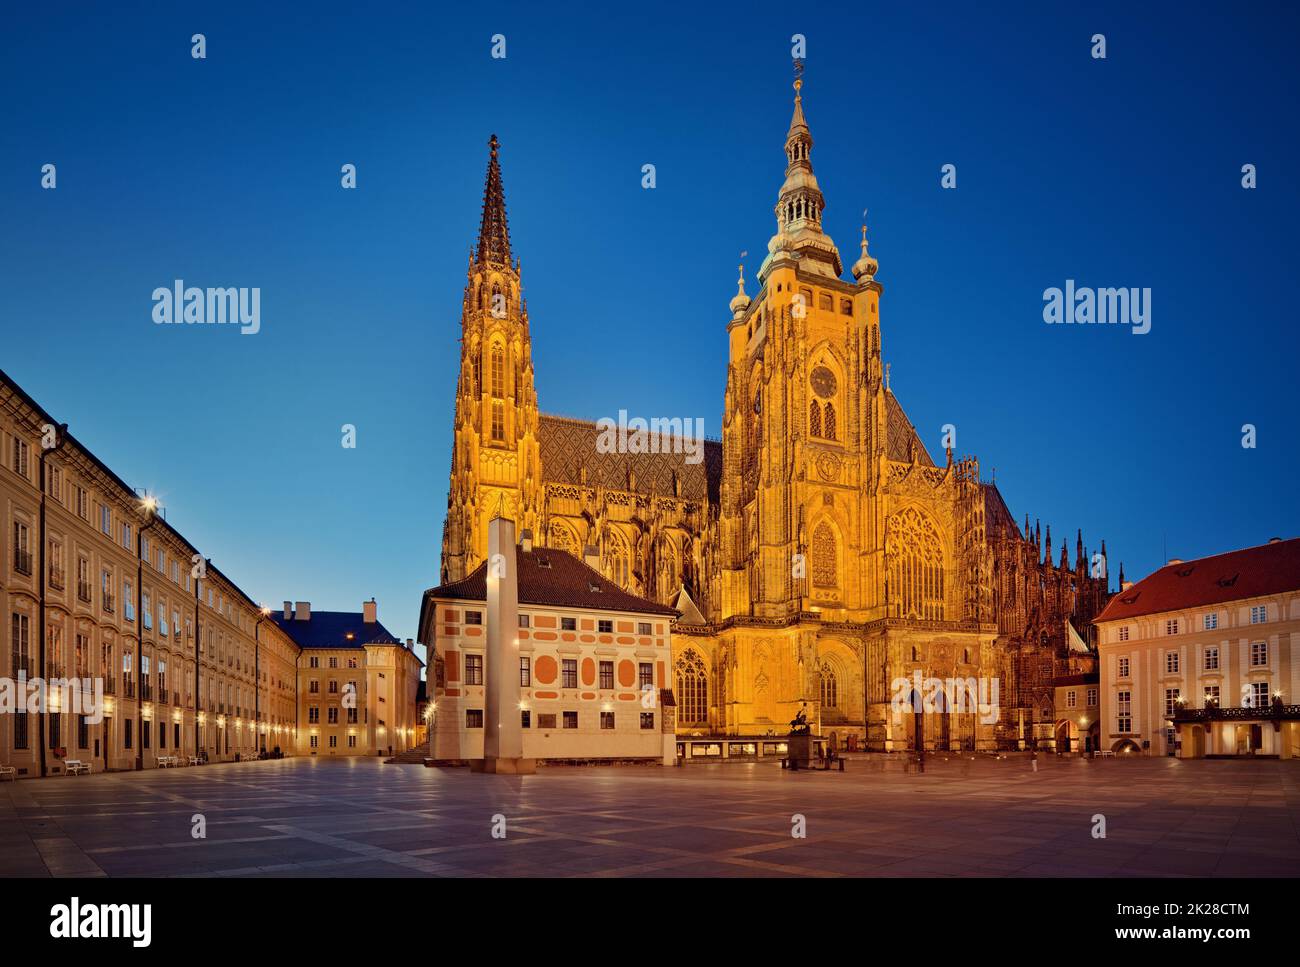 Tschechische Republik, Prag - gotische Architektur - St. Veitsdom - Südtür und Turm bei Nacht Stockfoto